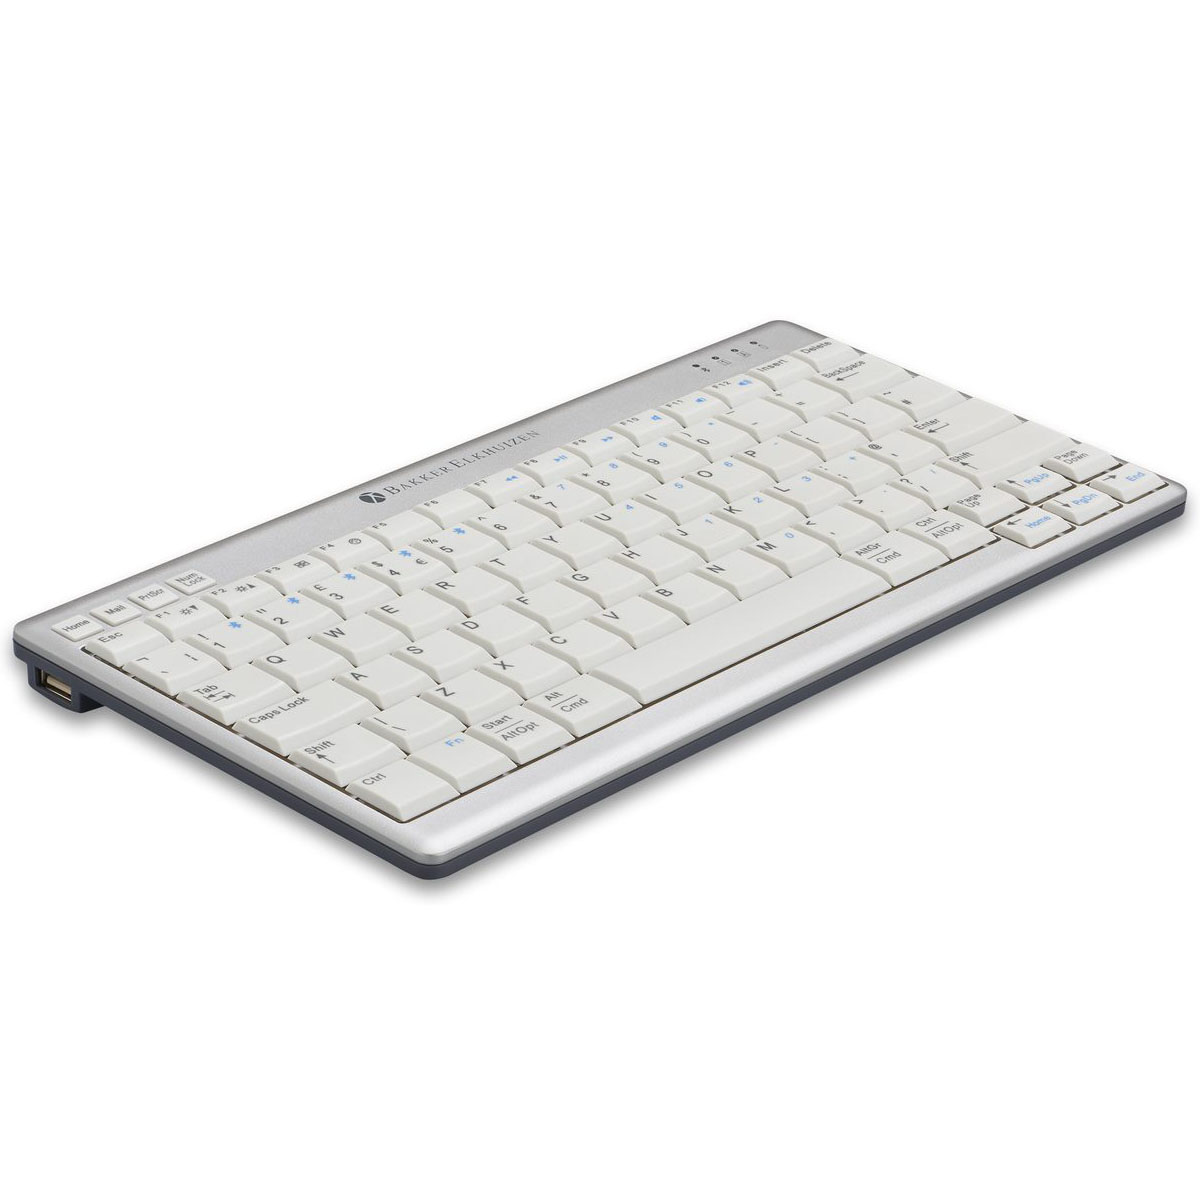 UltraBoard 950 Wireless Compact Keyboard 3